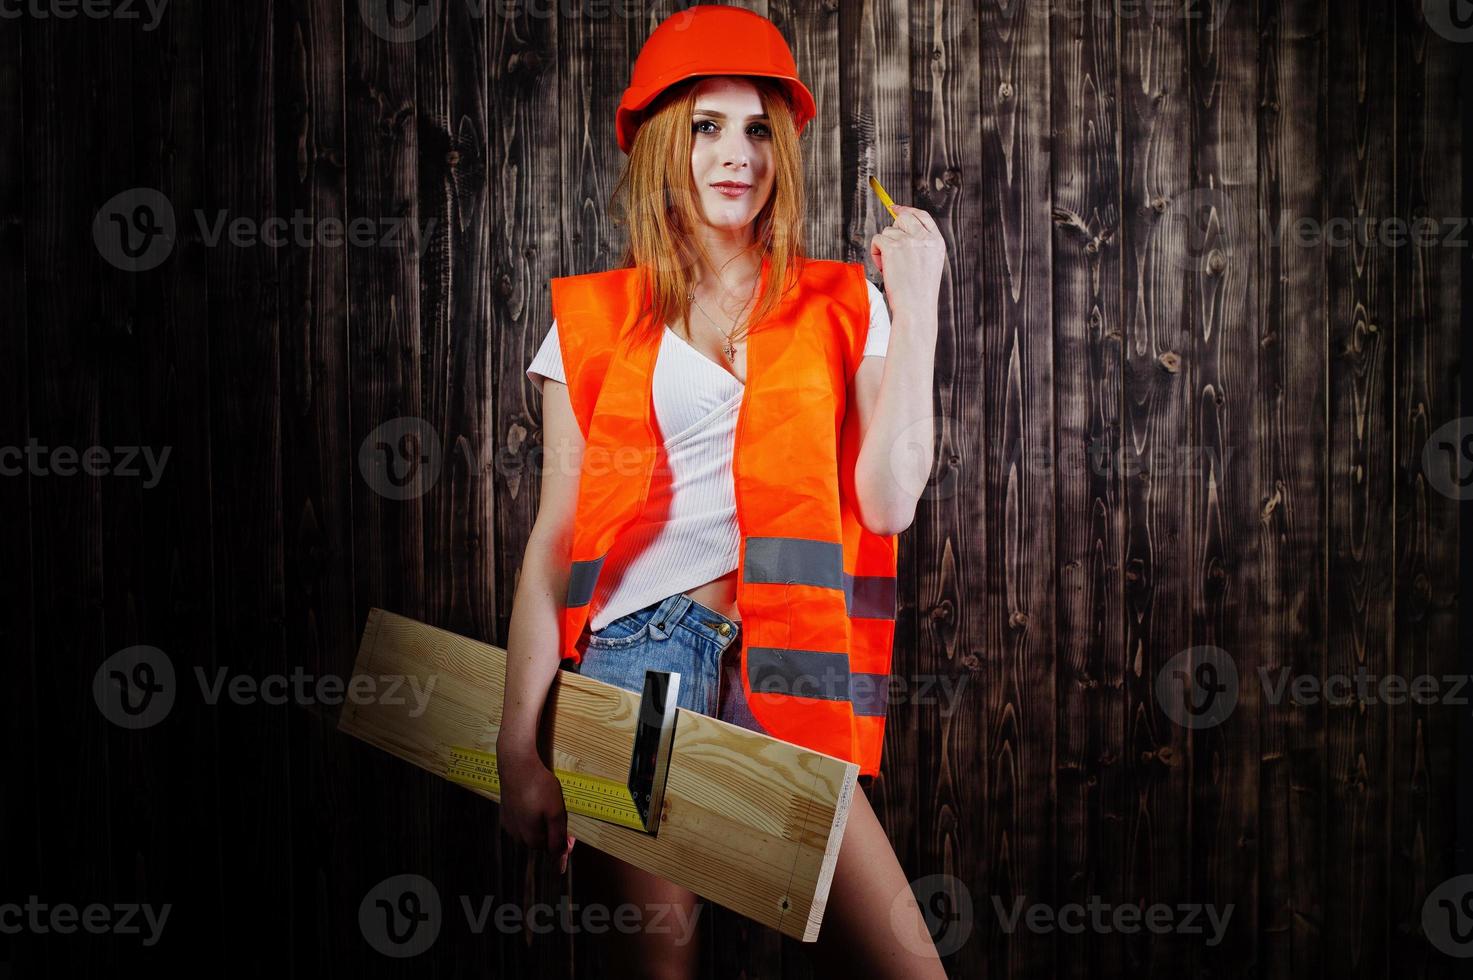 ingenjör kvinna i orange skydda hjälm och bygga jacka mot trä bakgrund håller styrelse och linjal. foto